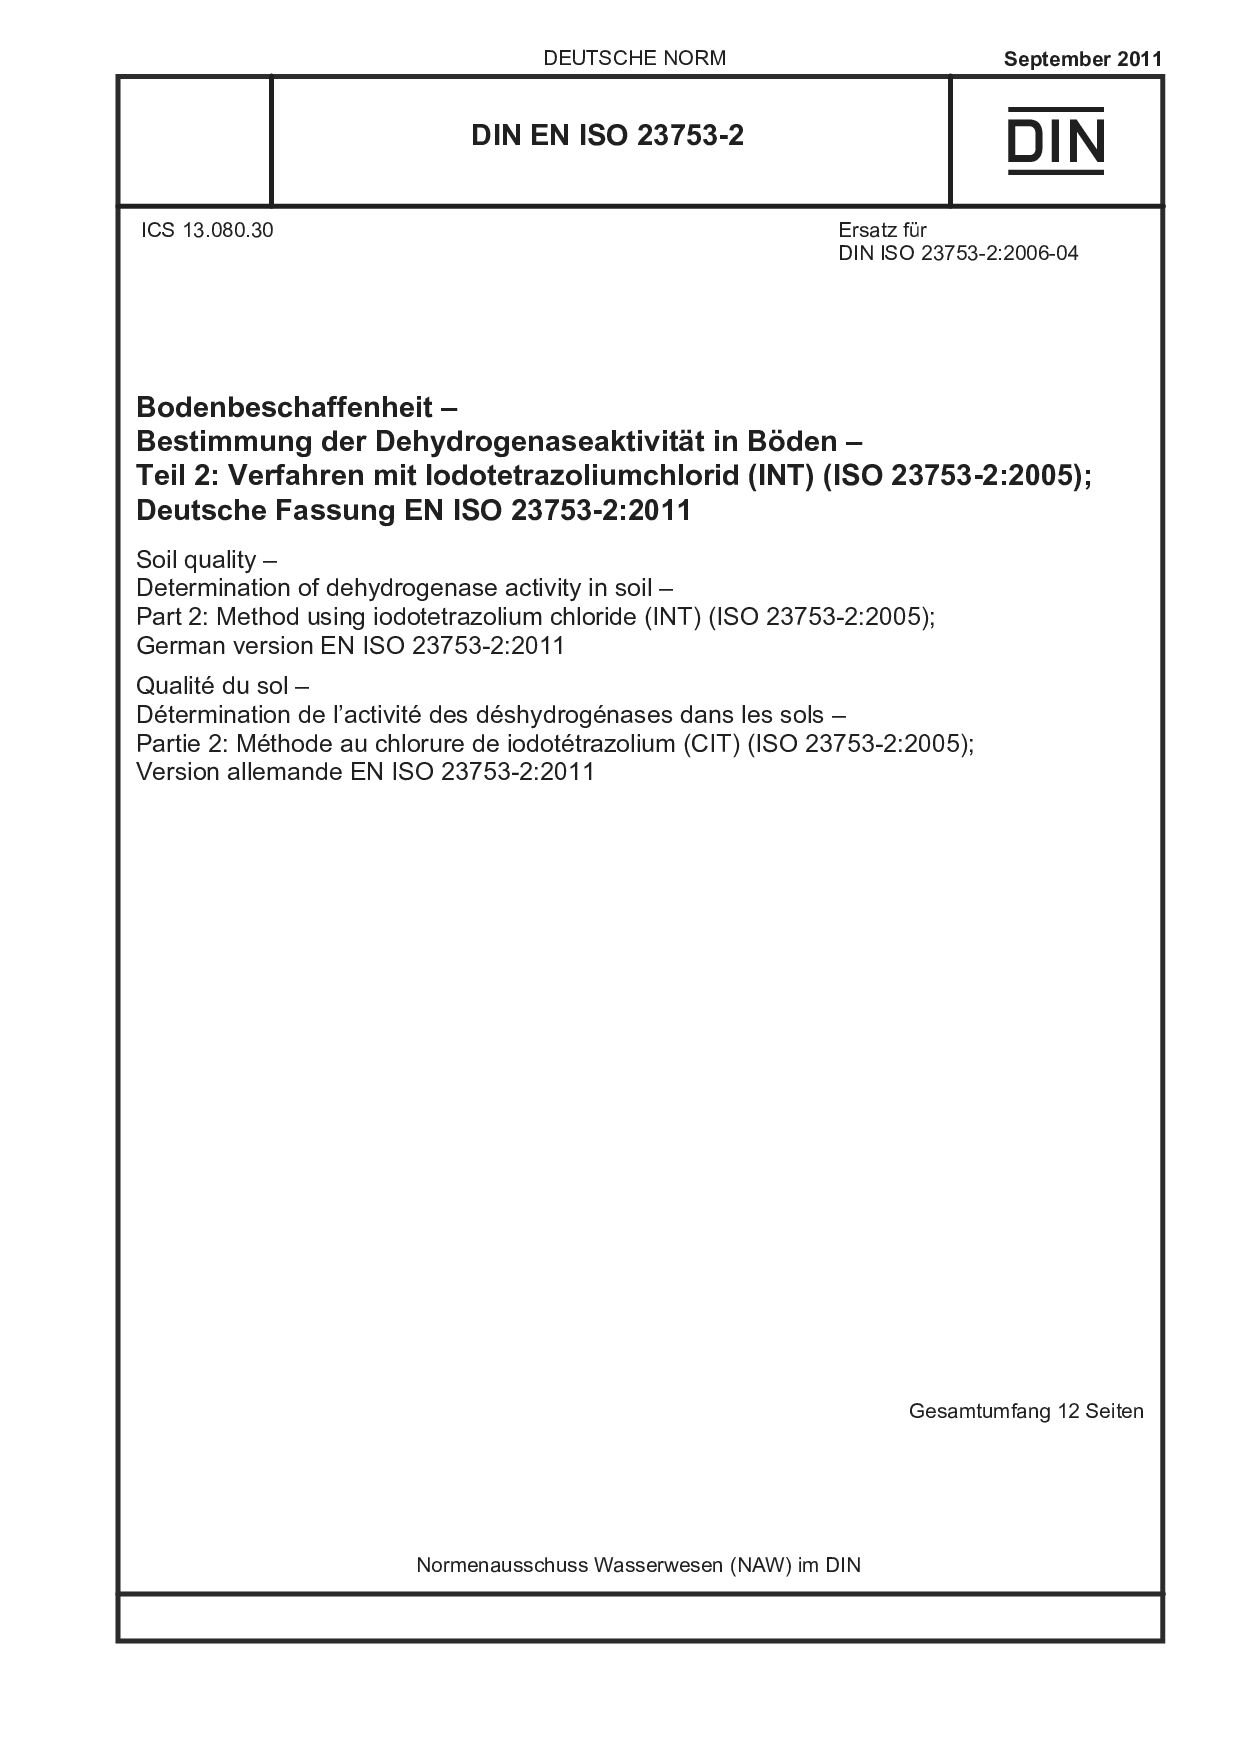 DIN EN ISO 23753-2:2011